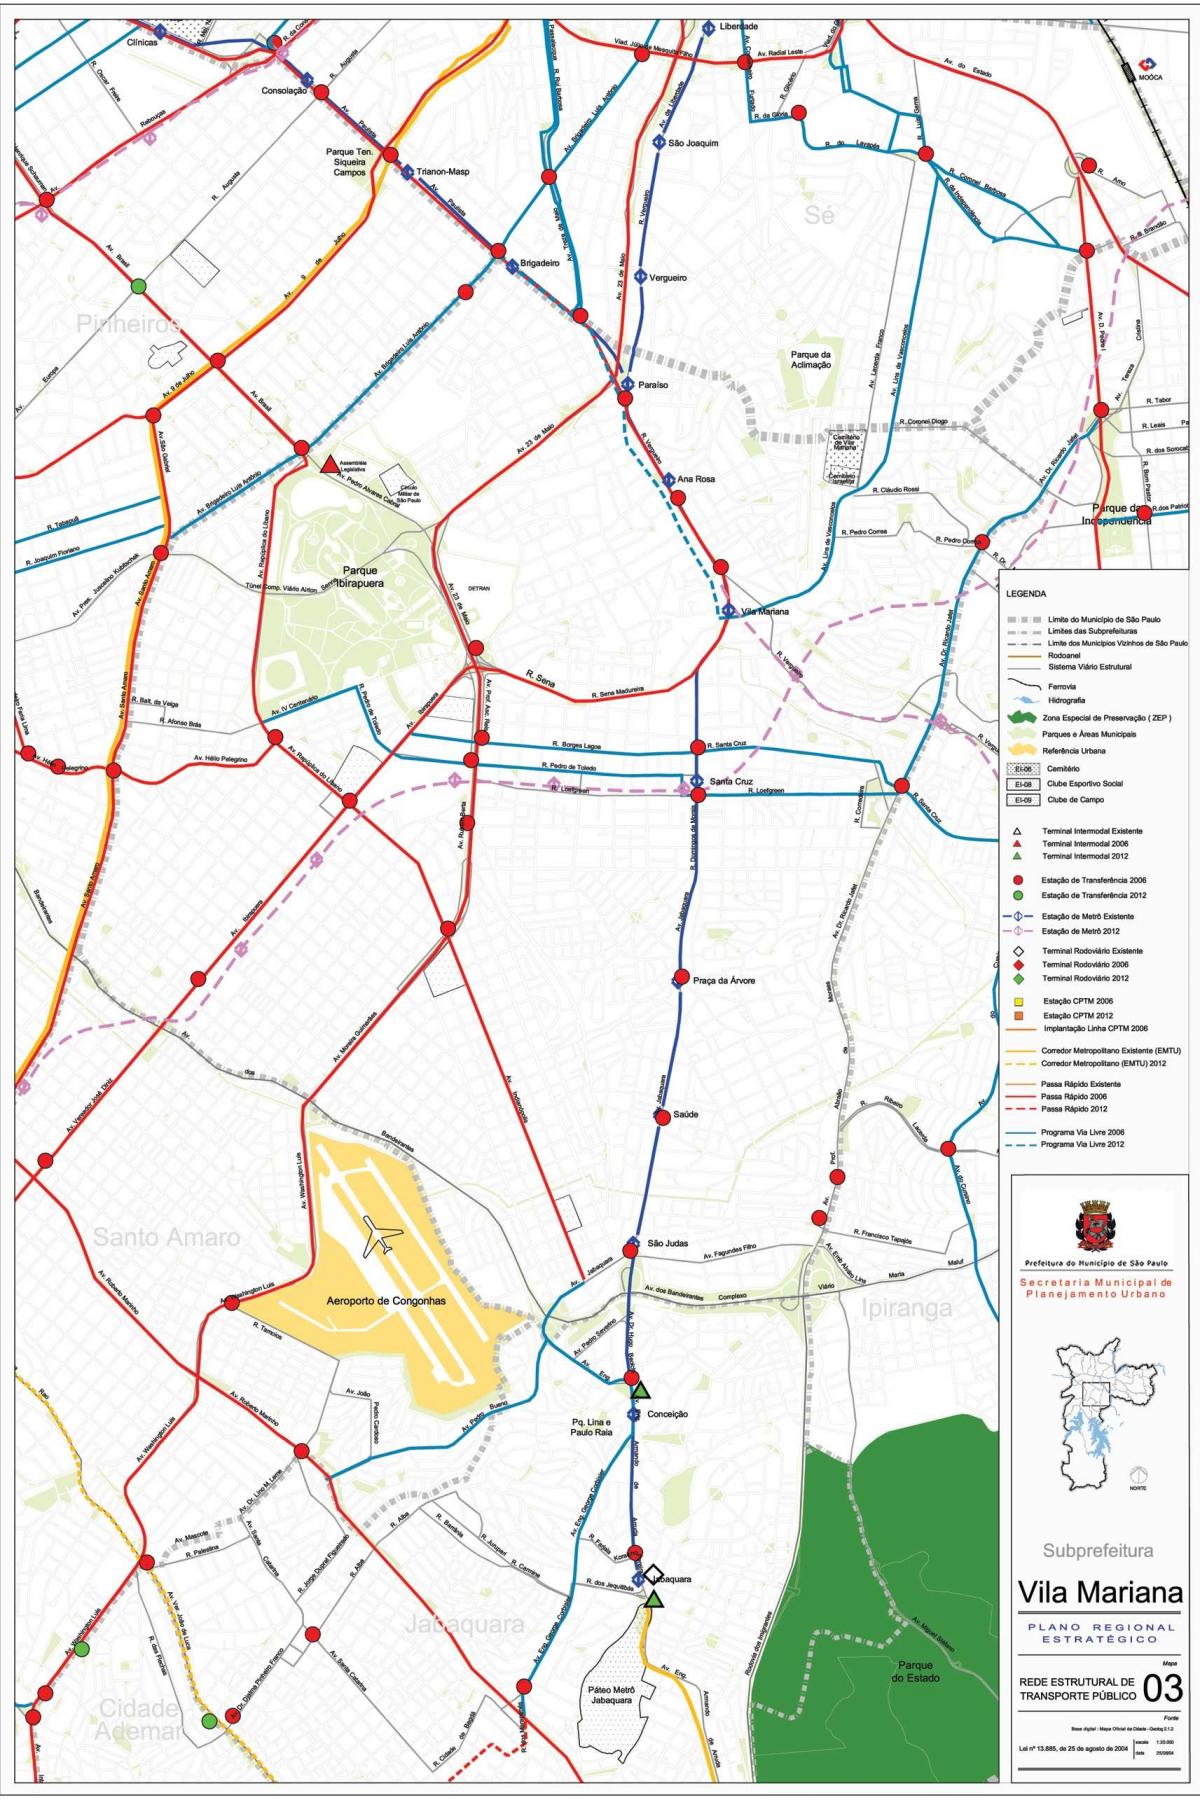 نقشه ویلا ماریانا, São Paulo - حمل و نقل عمومی